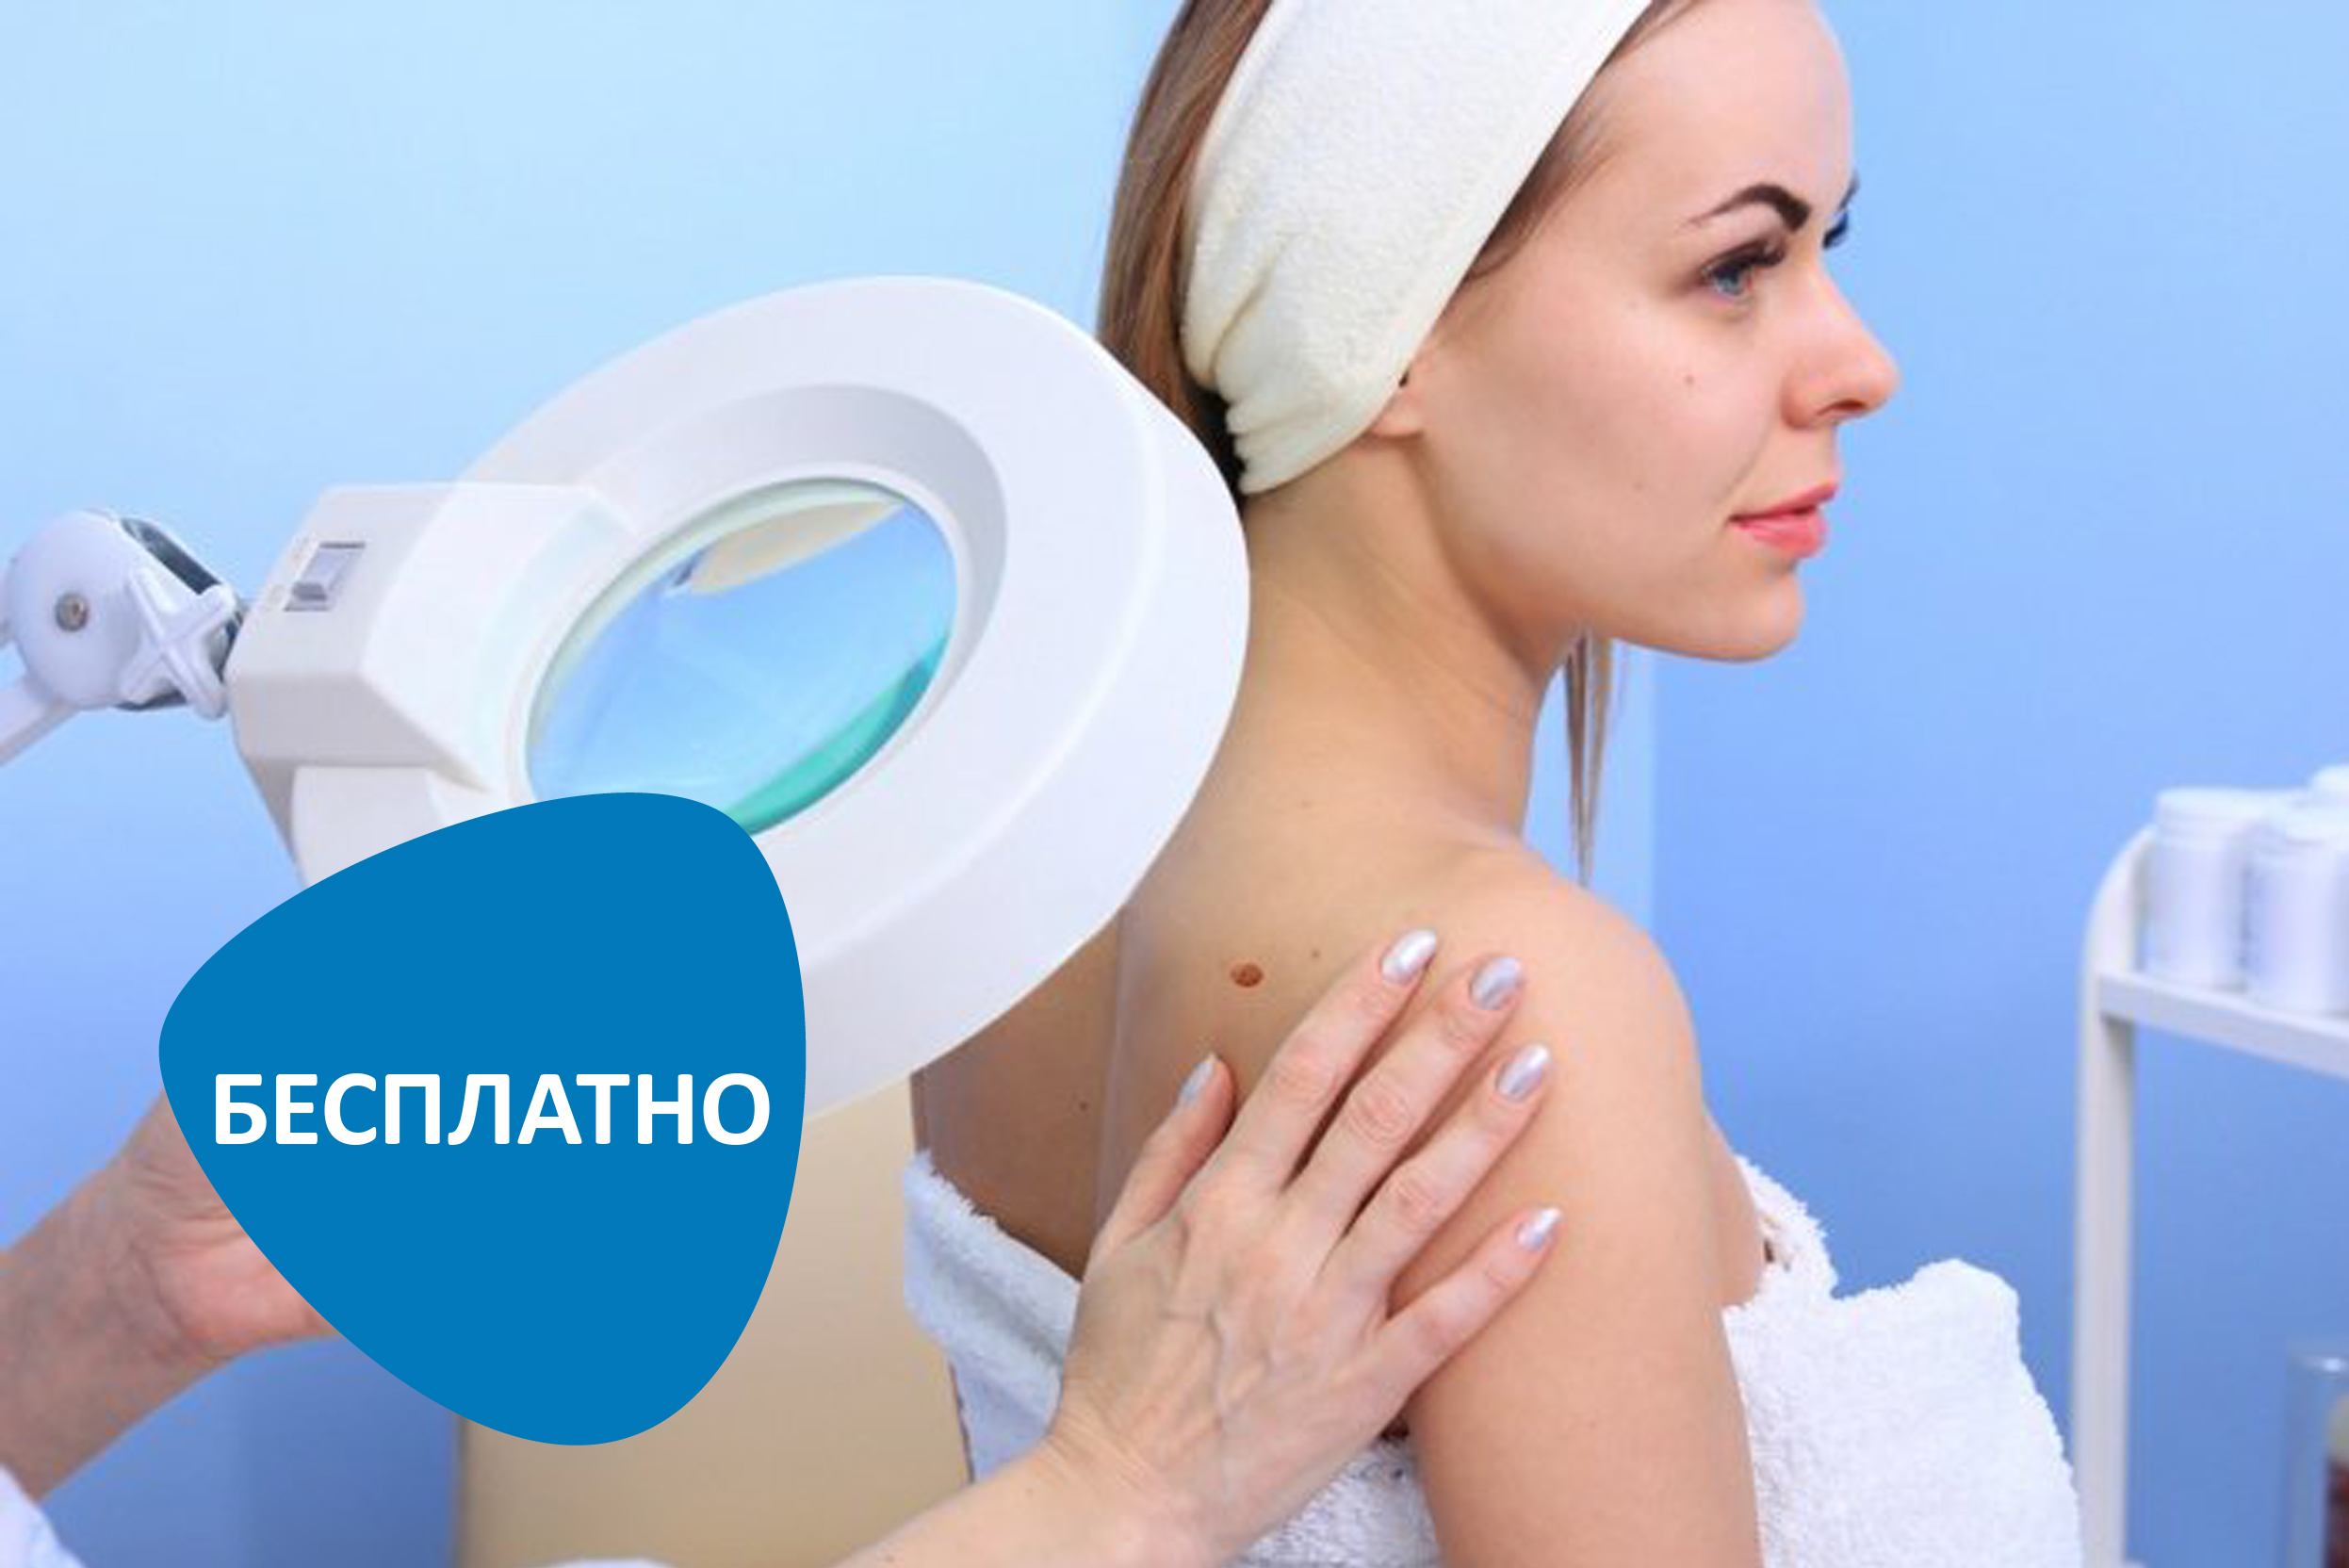 Бесплатная консультация дерматоонколога по вопросам рака кожи в Москве